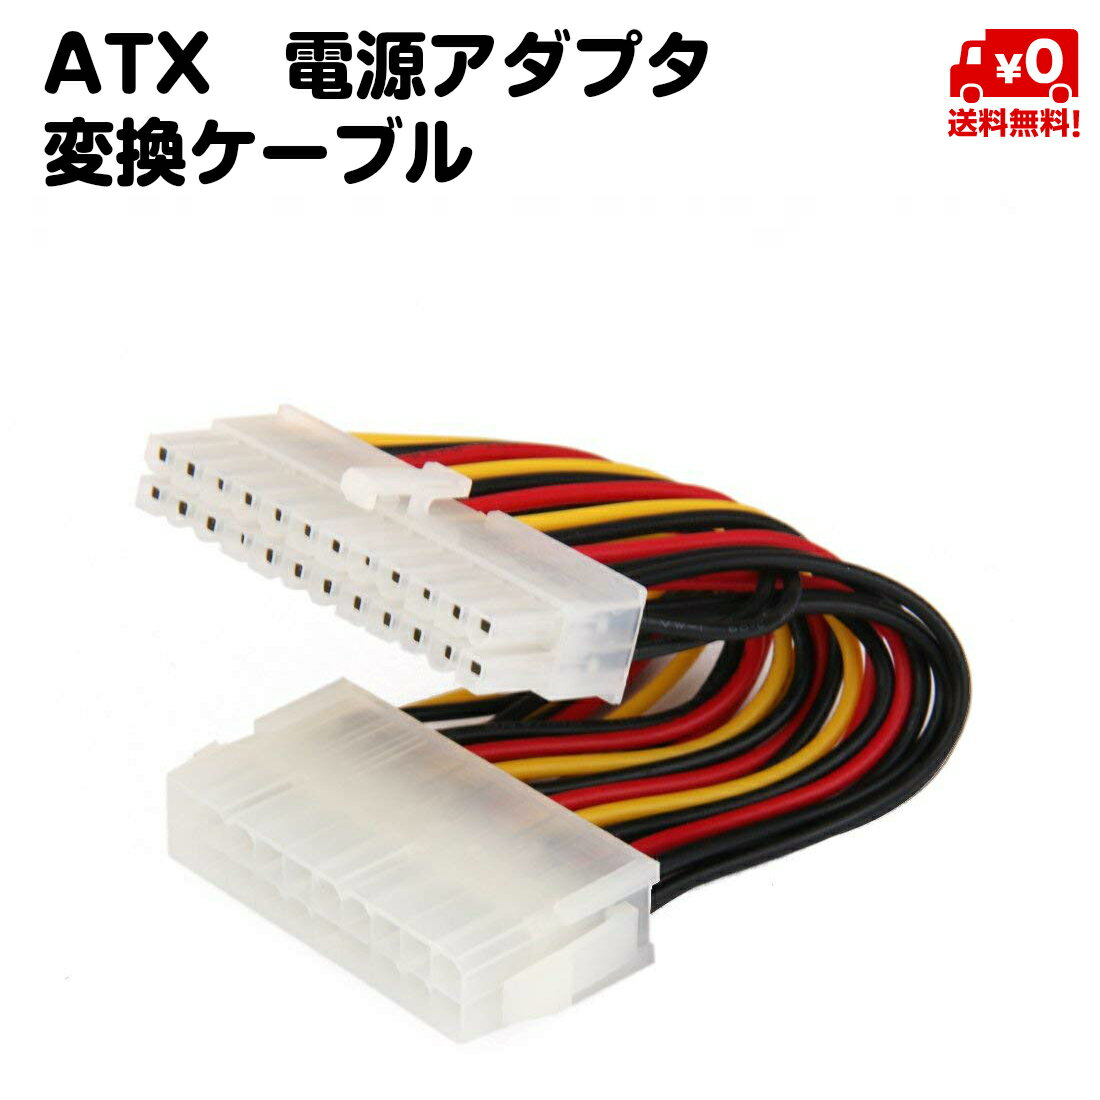 ATX オス24ピン メス20ピン PSU pin 電源アダプタ 変換ケーブル 送料無料